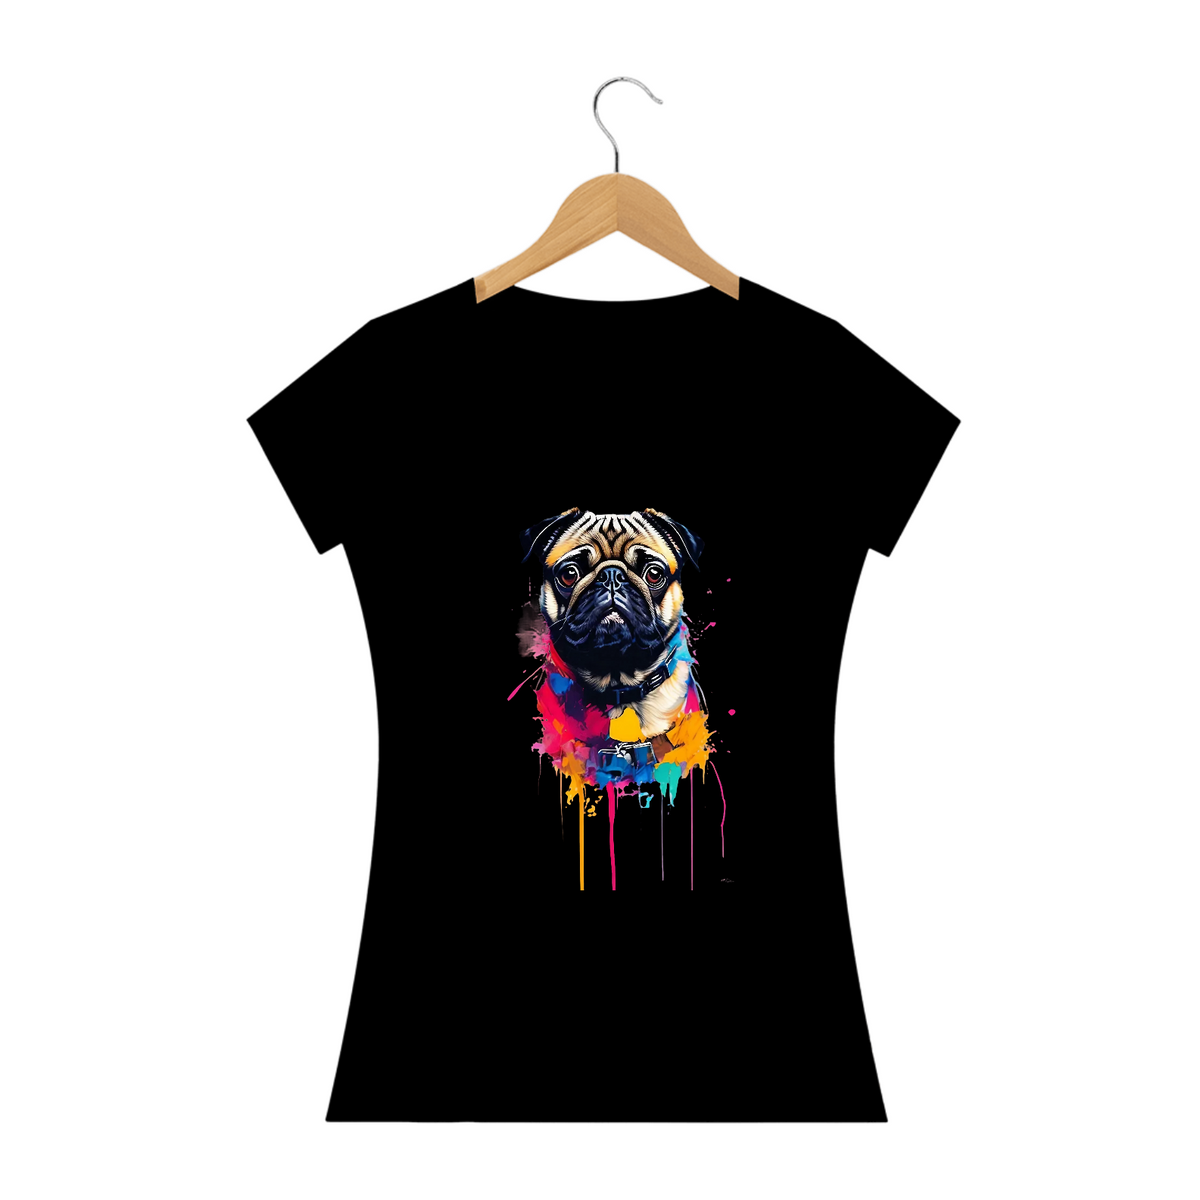 Nome do produto: Pintura de Pug / T-shirt Woman Pug